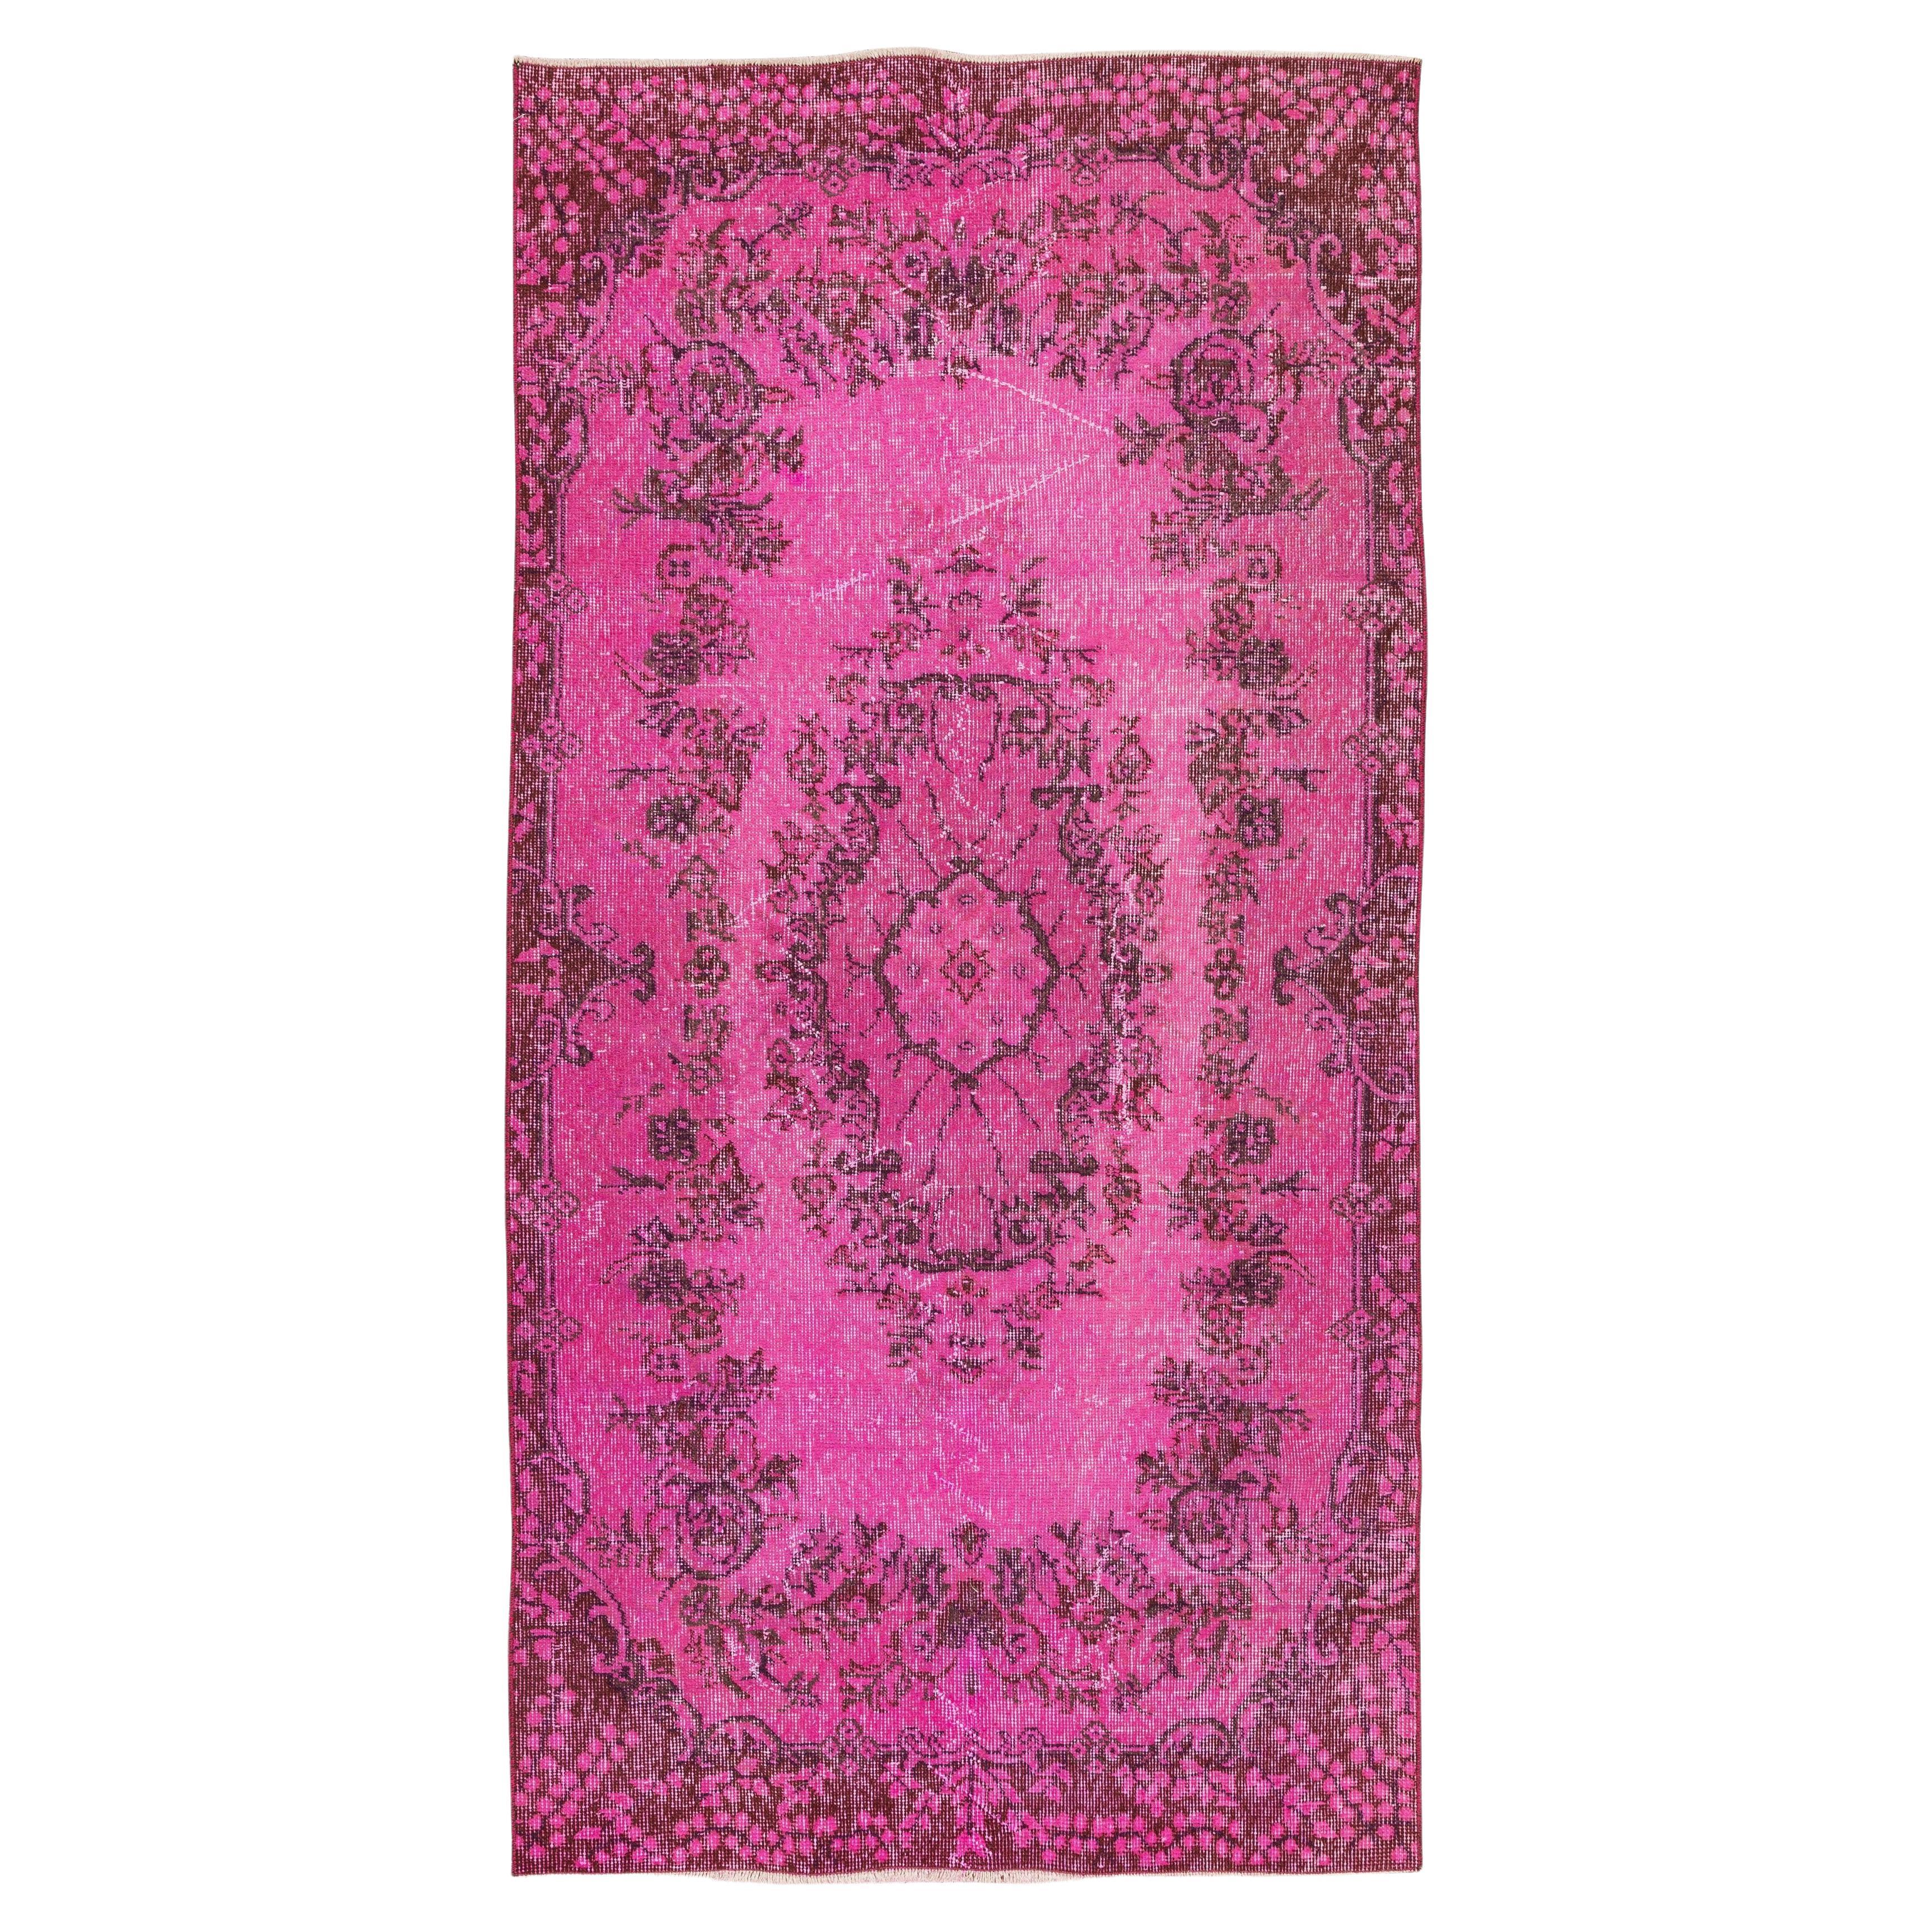 3,5x7 Ft Handgefertigter Anatolischer Akzent-Teppich in Rosa mit floralem Medaillon-Design